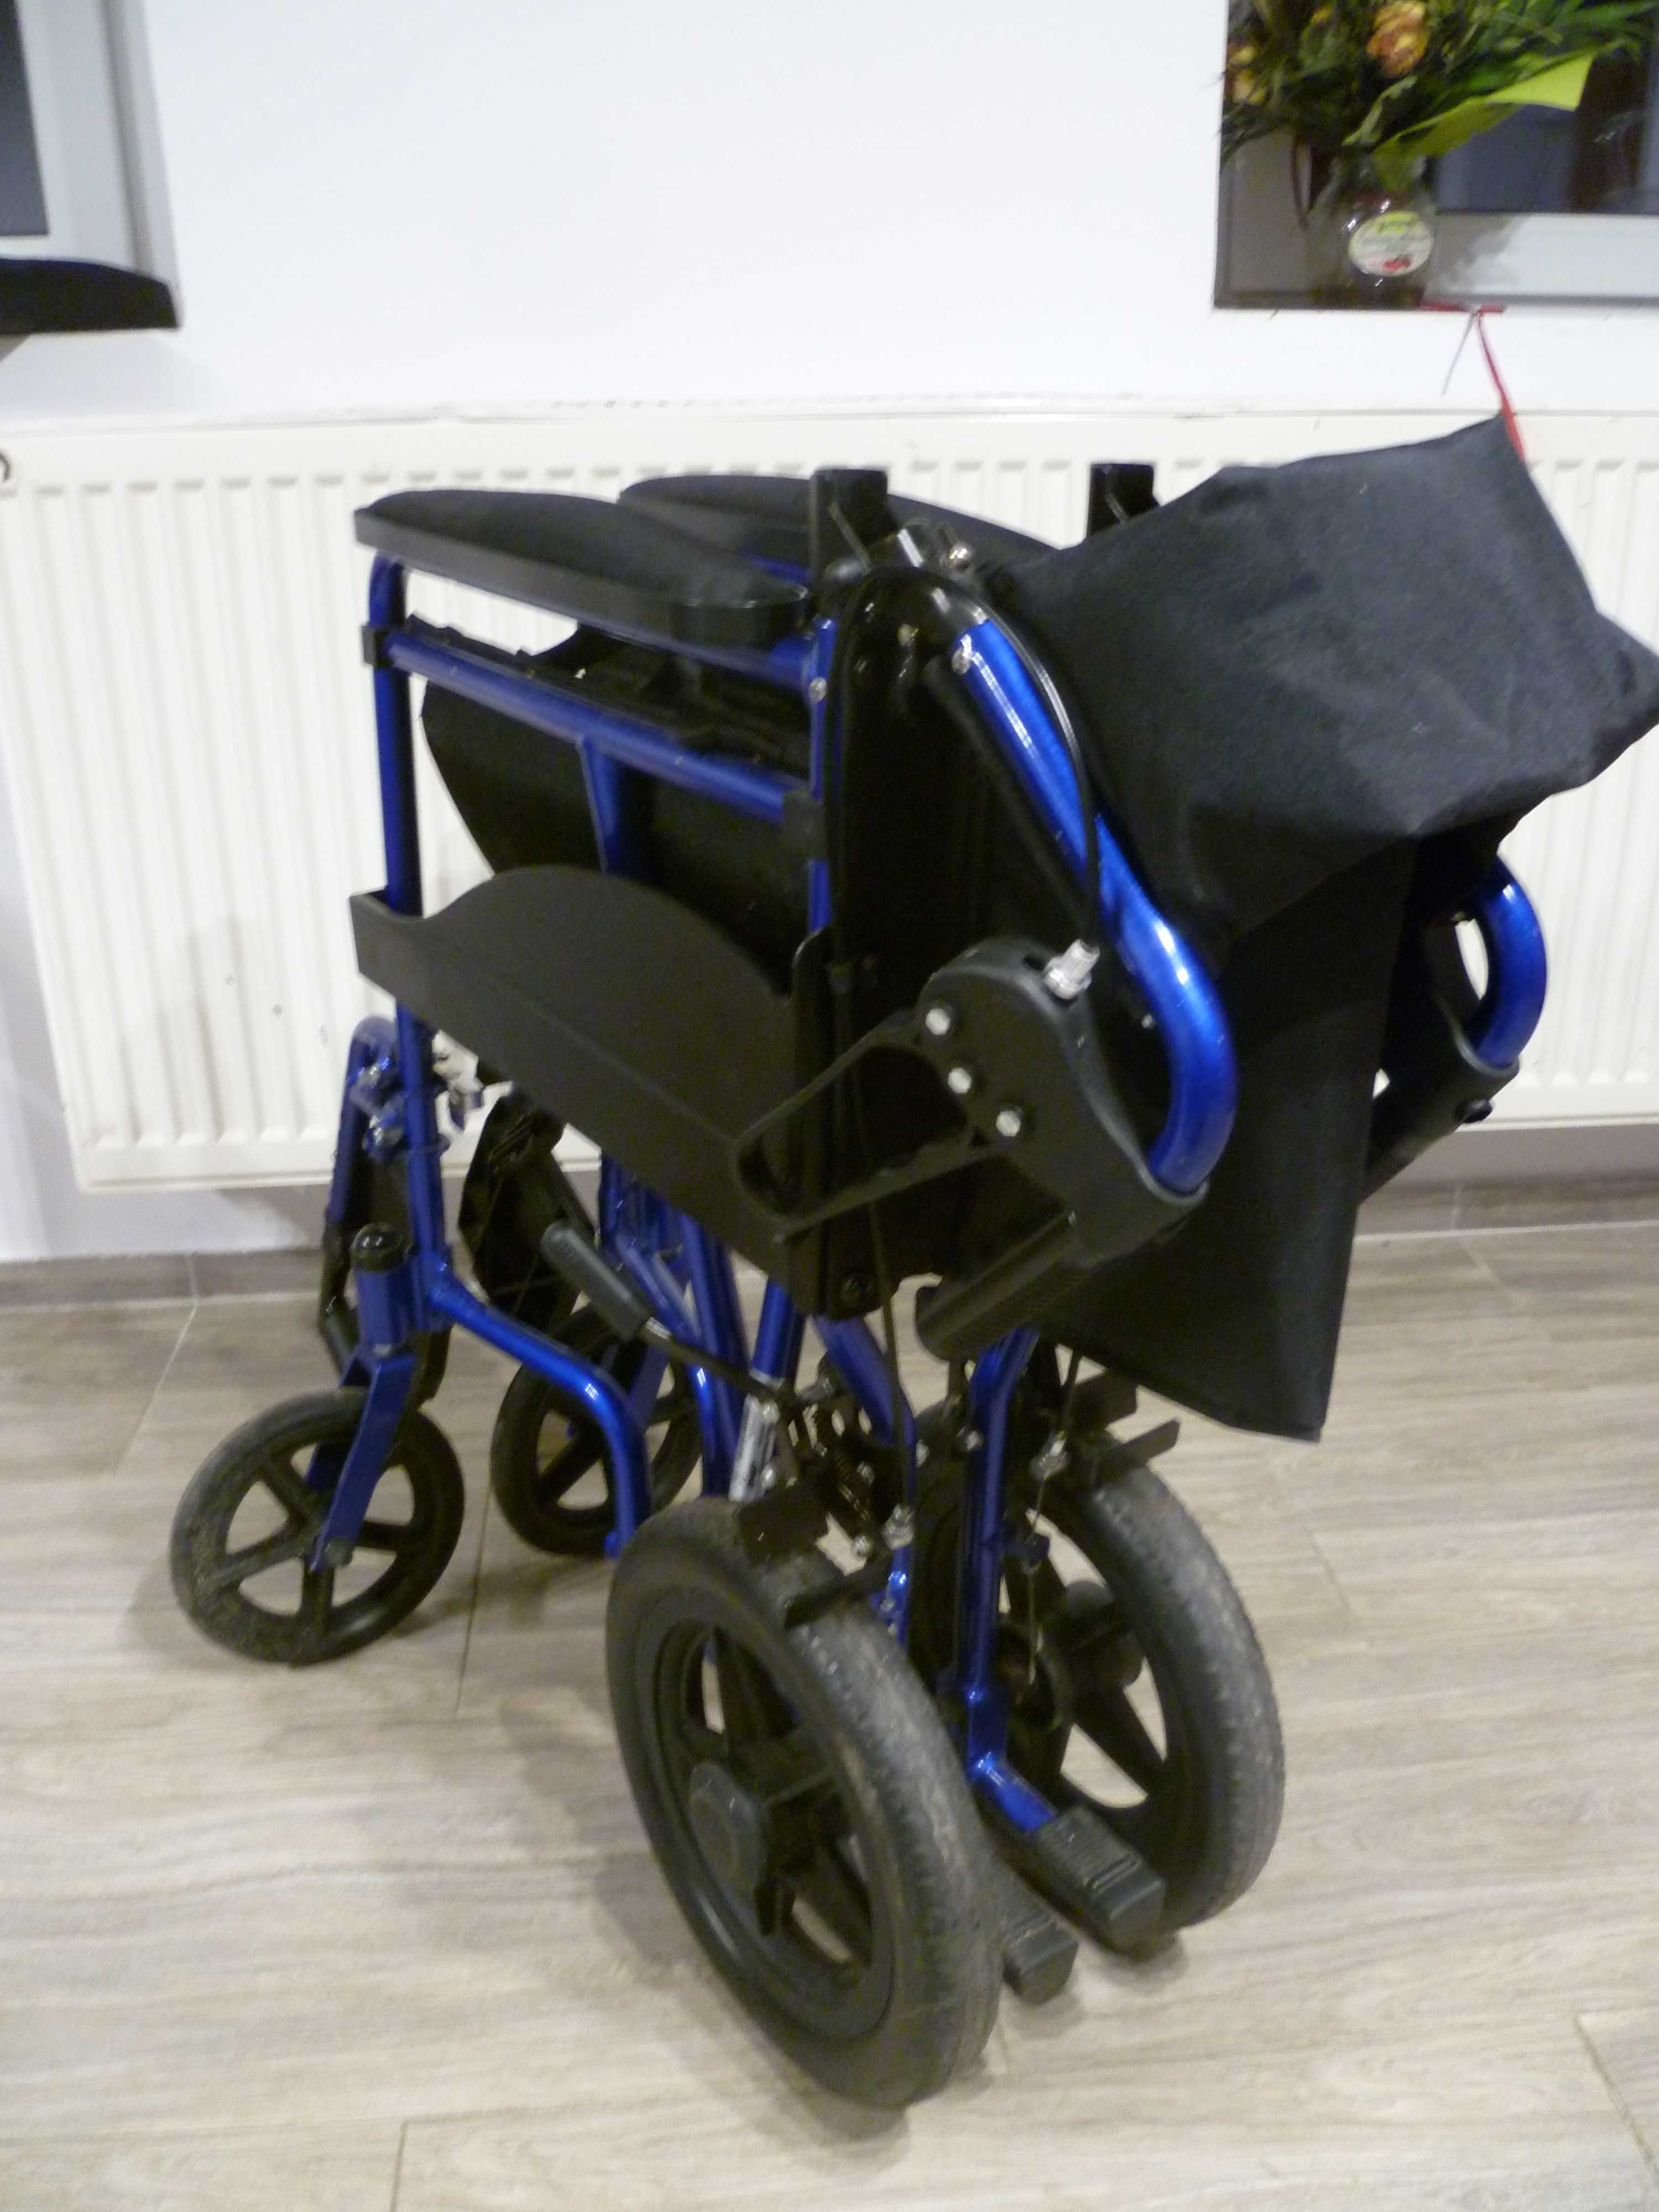 Kompaktowy wózek transportowy inwalidzki Drive 130 kg poducha